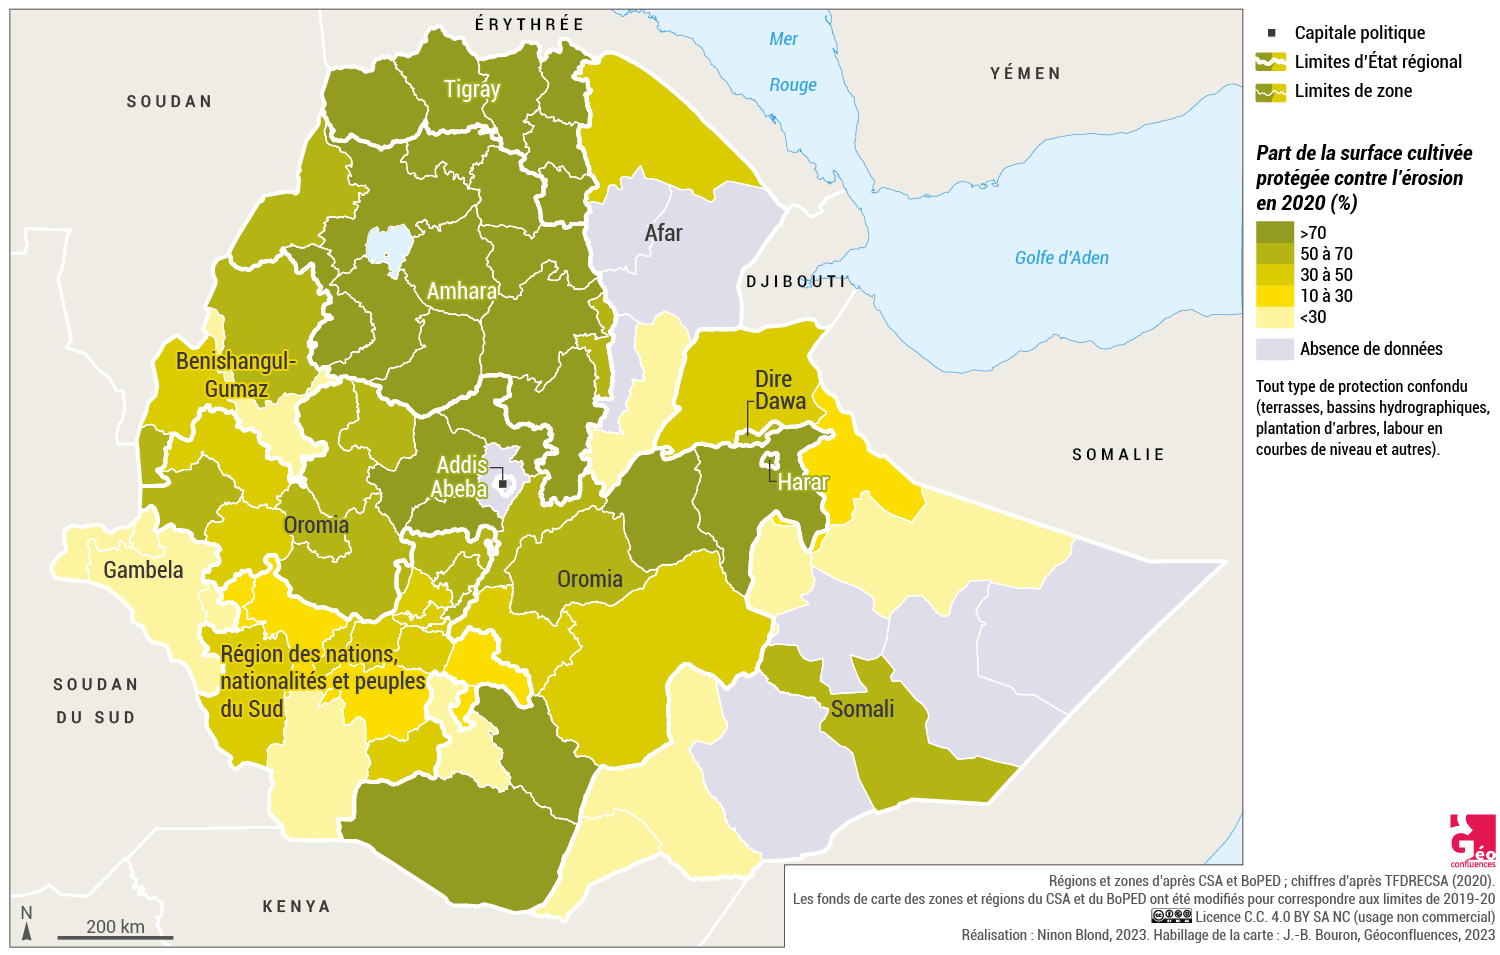 Carte part des cultures protégées contre l'érosion en Ethiopie